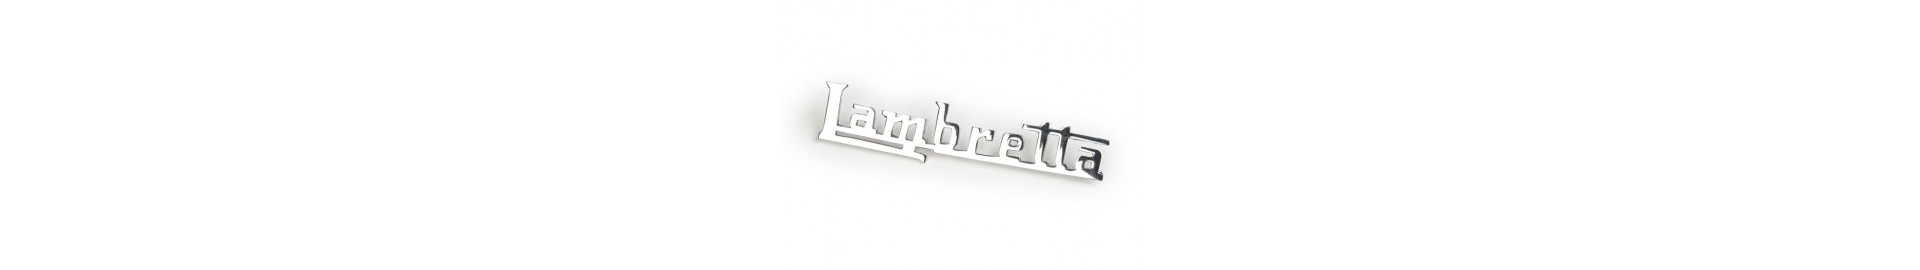 Anagramas y Logotipos Lambretta